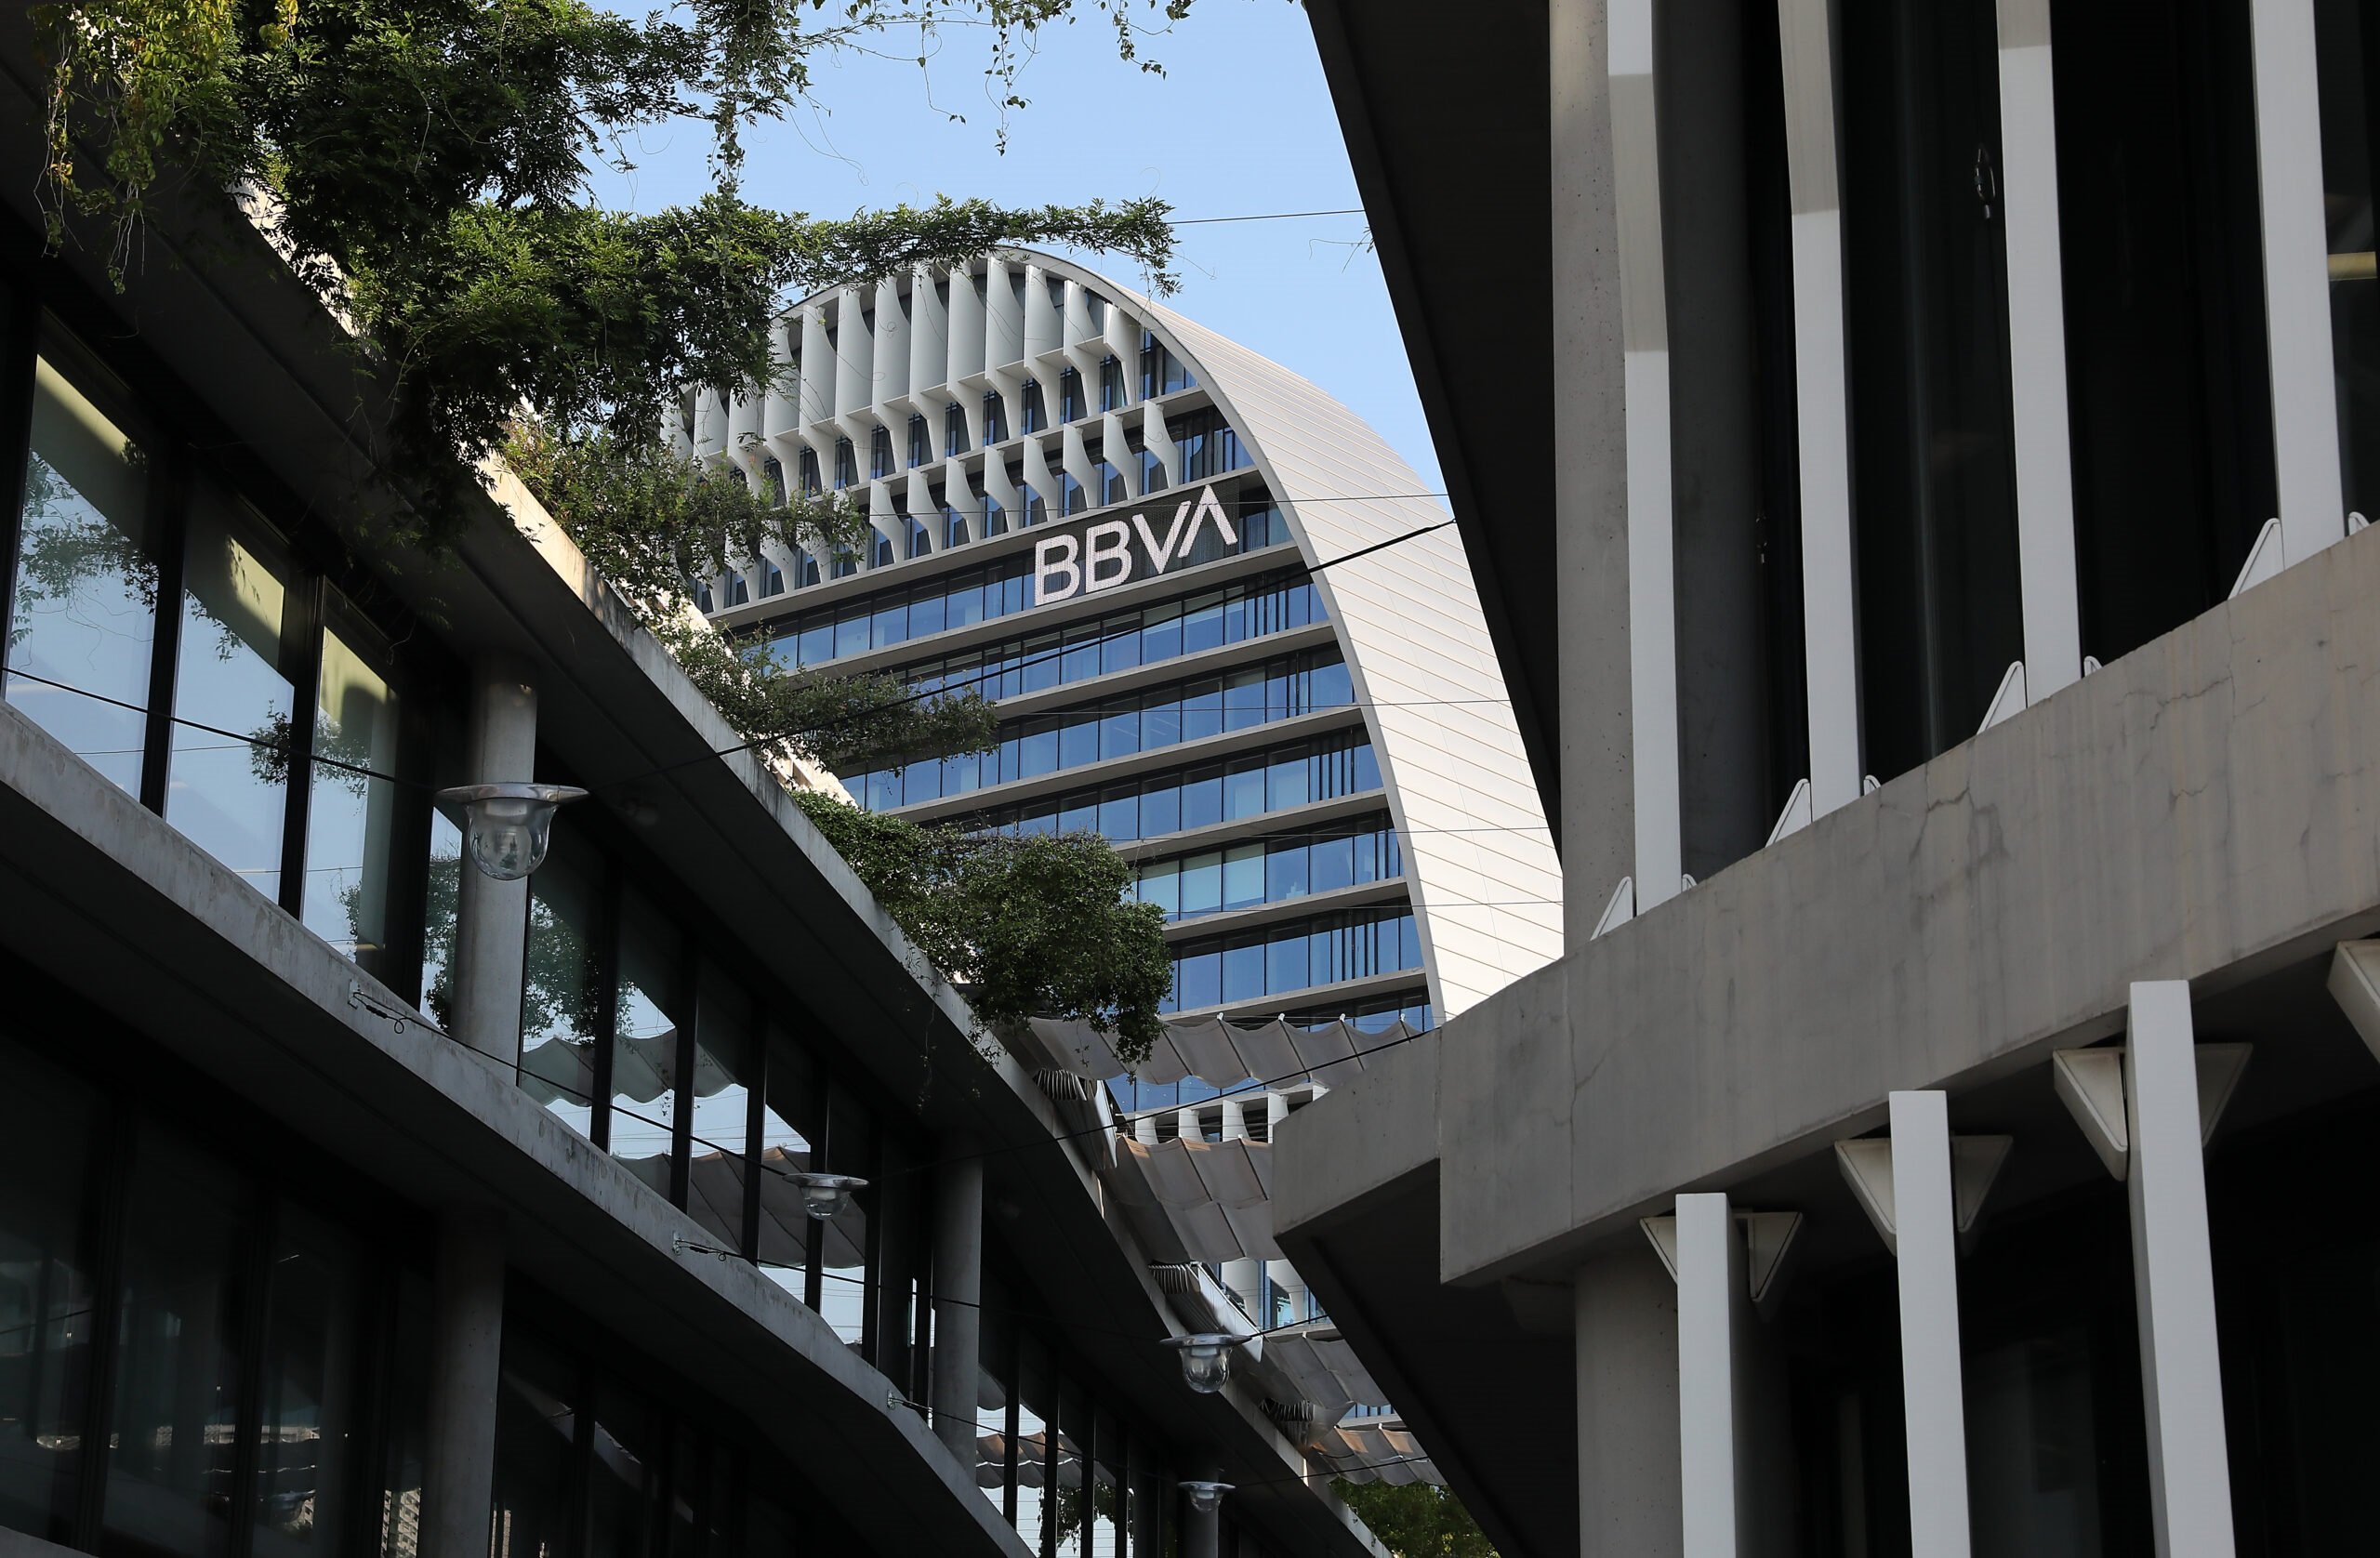 El Grup BBVA guanya 3.001 milions en el primer semestre, un 57% més